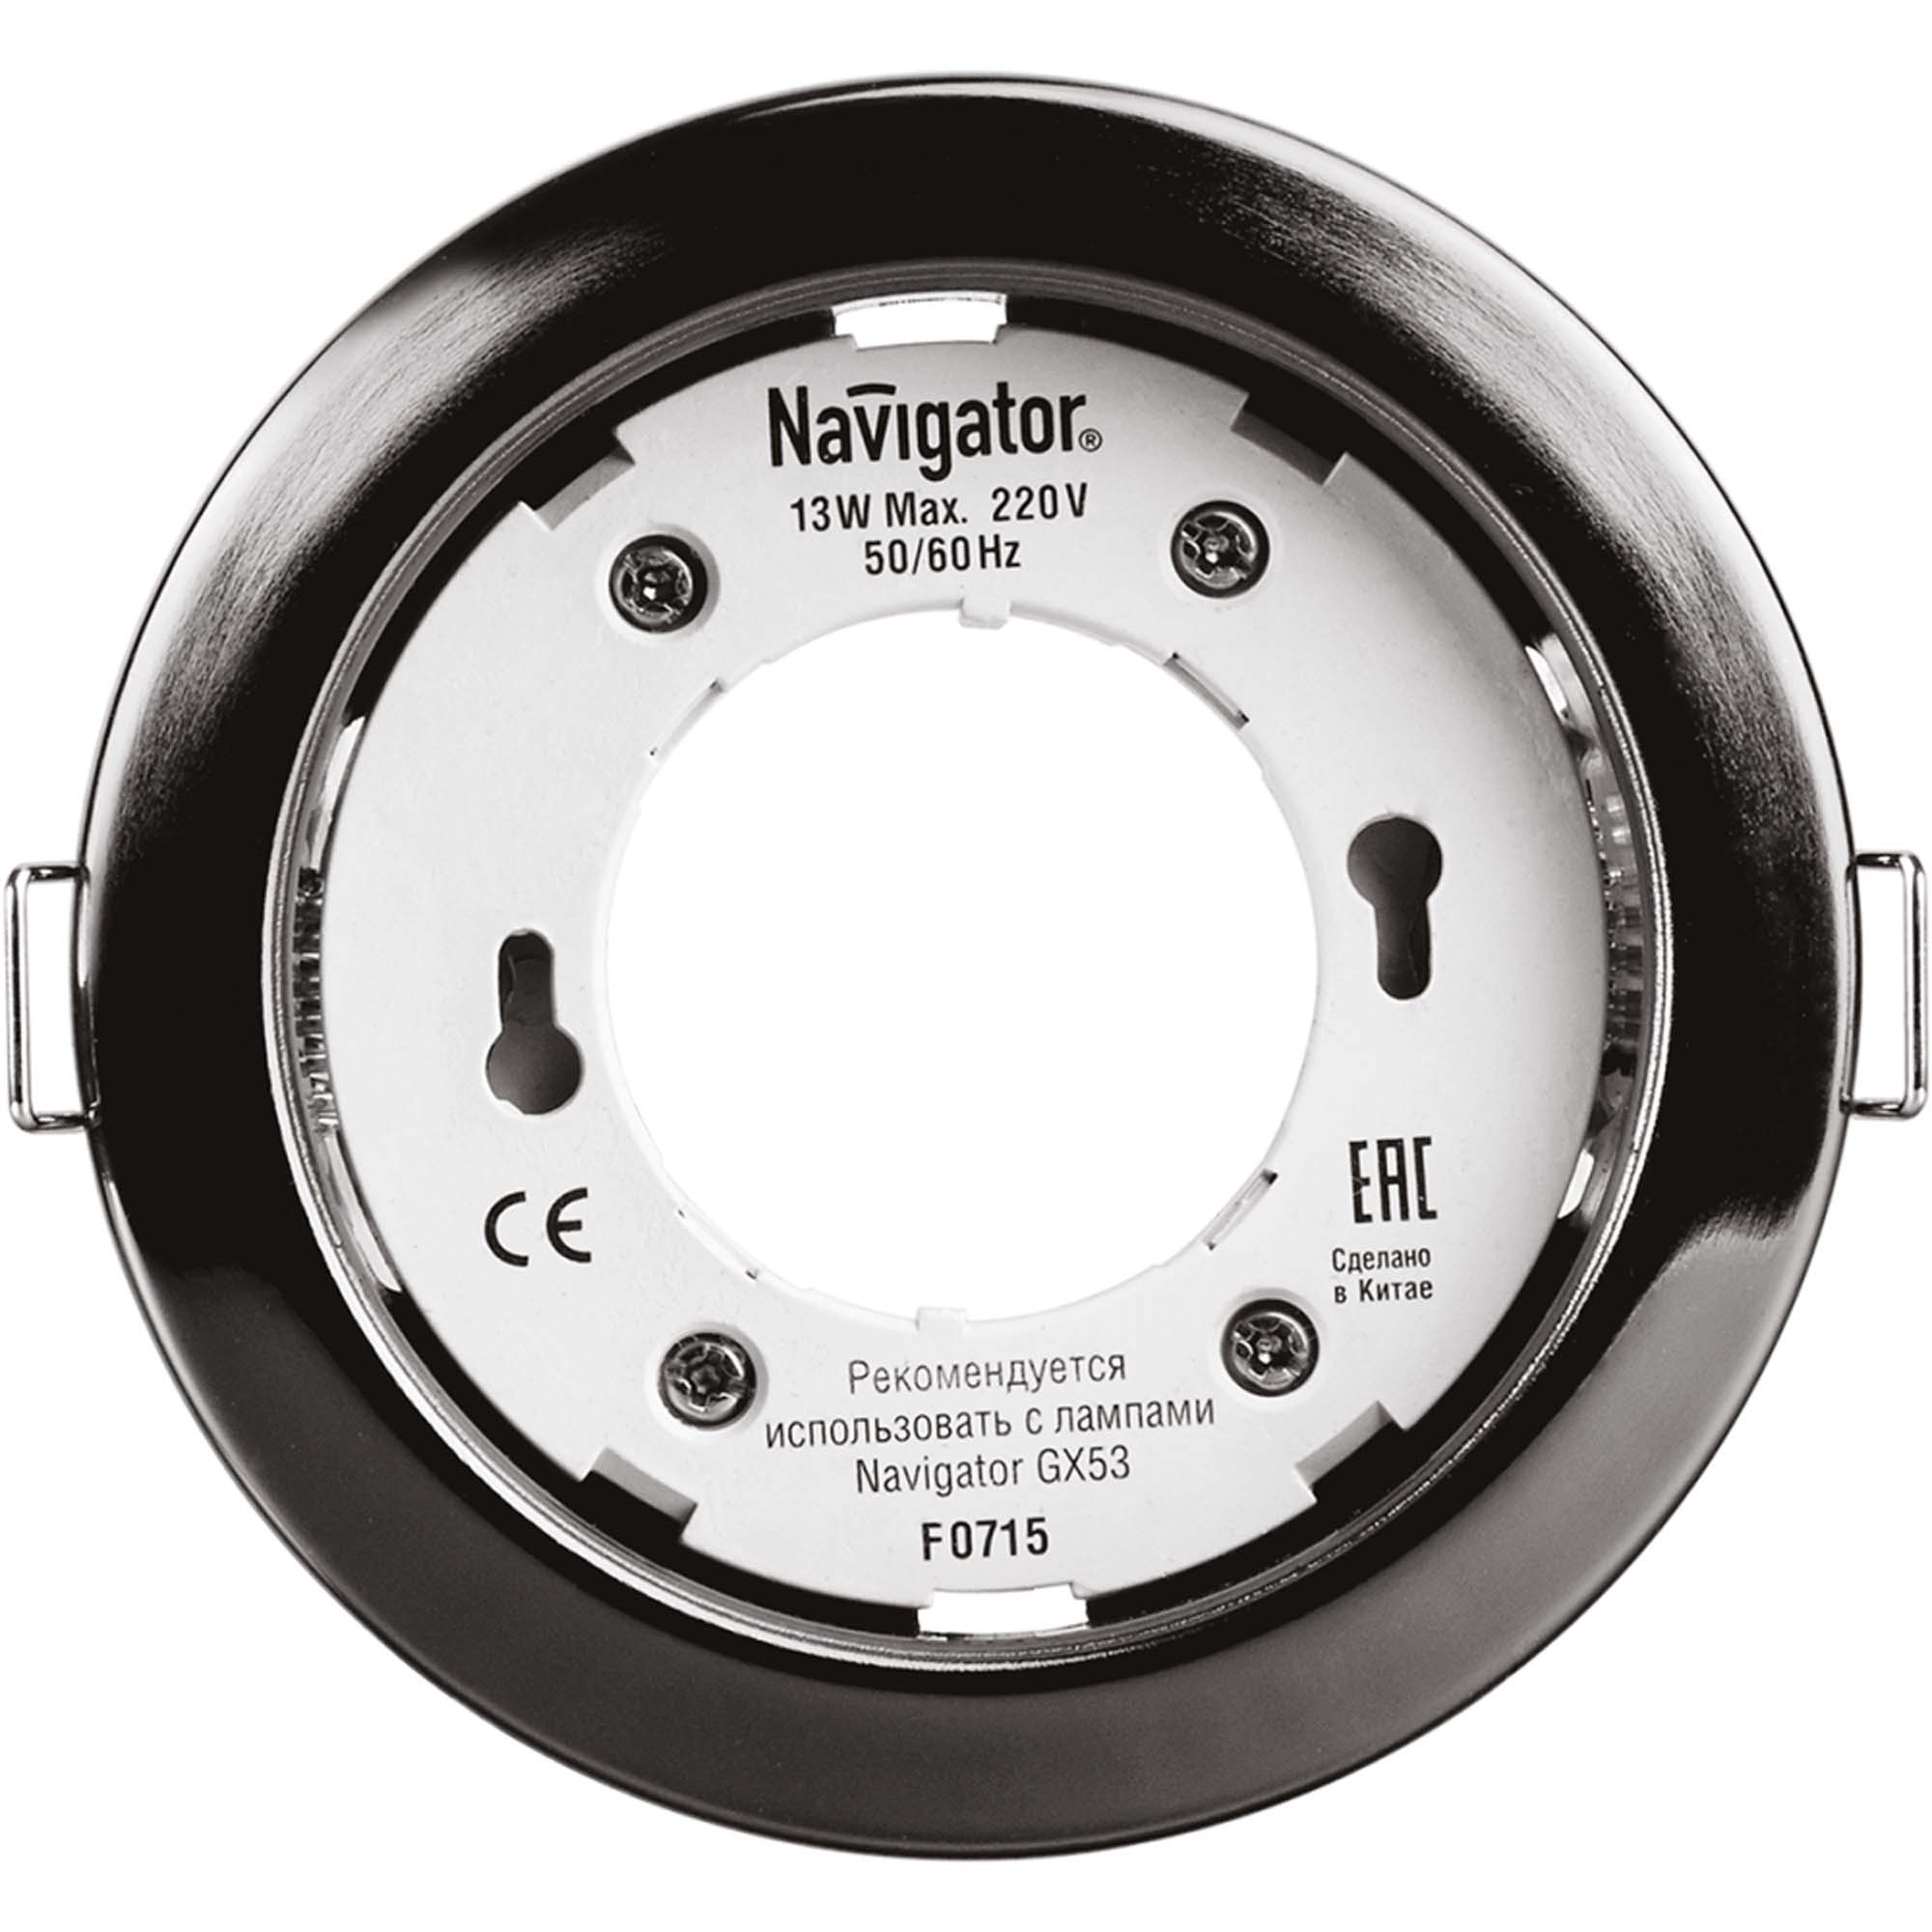 Светильник встраиваемый Navigator gx53-черный хром светильник встраиваемый navigator gx53 черный хром